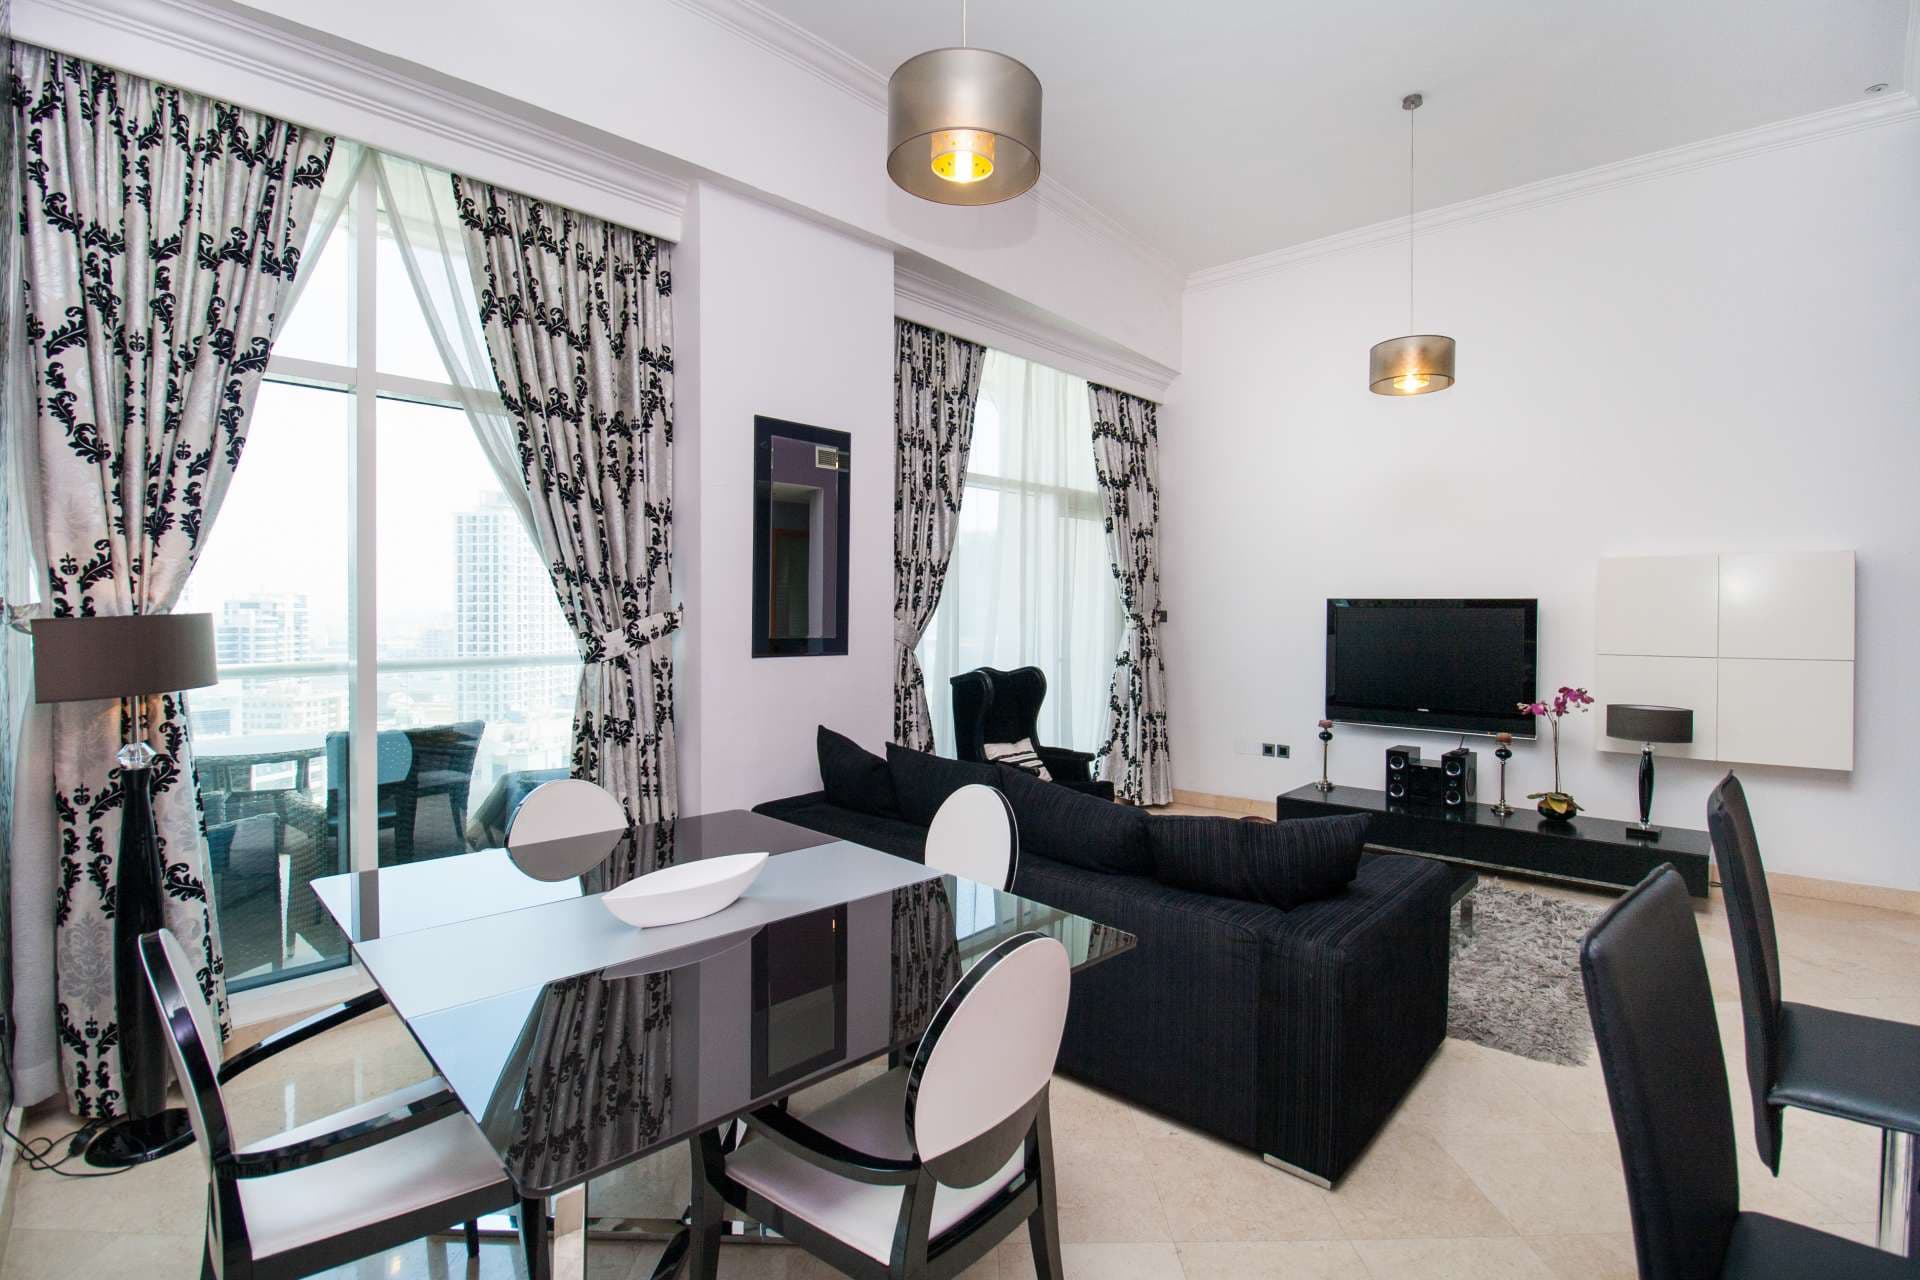 2 Bedroom Apartment For Rent Dorra Bay Lp04869 26bb9c68a0c0d200.jpg